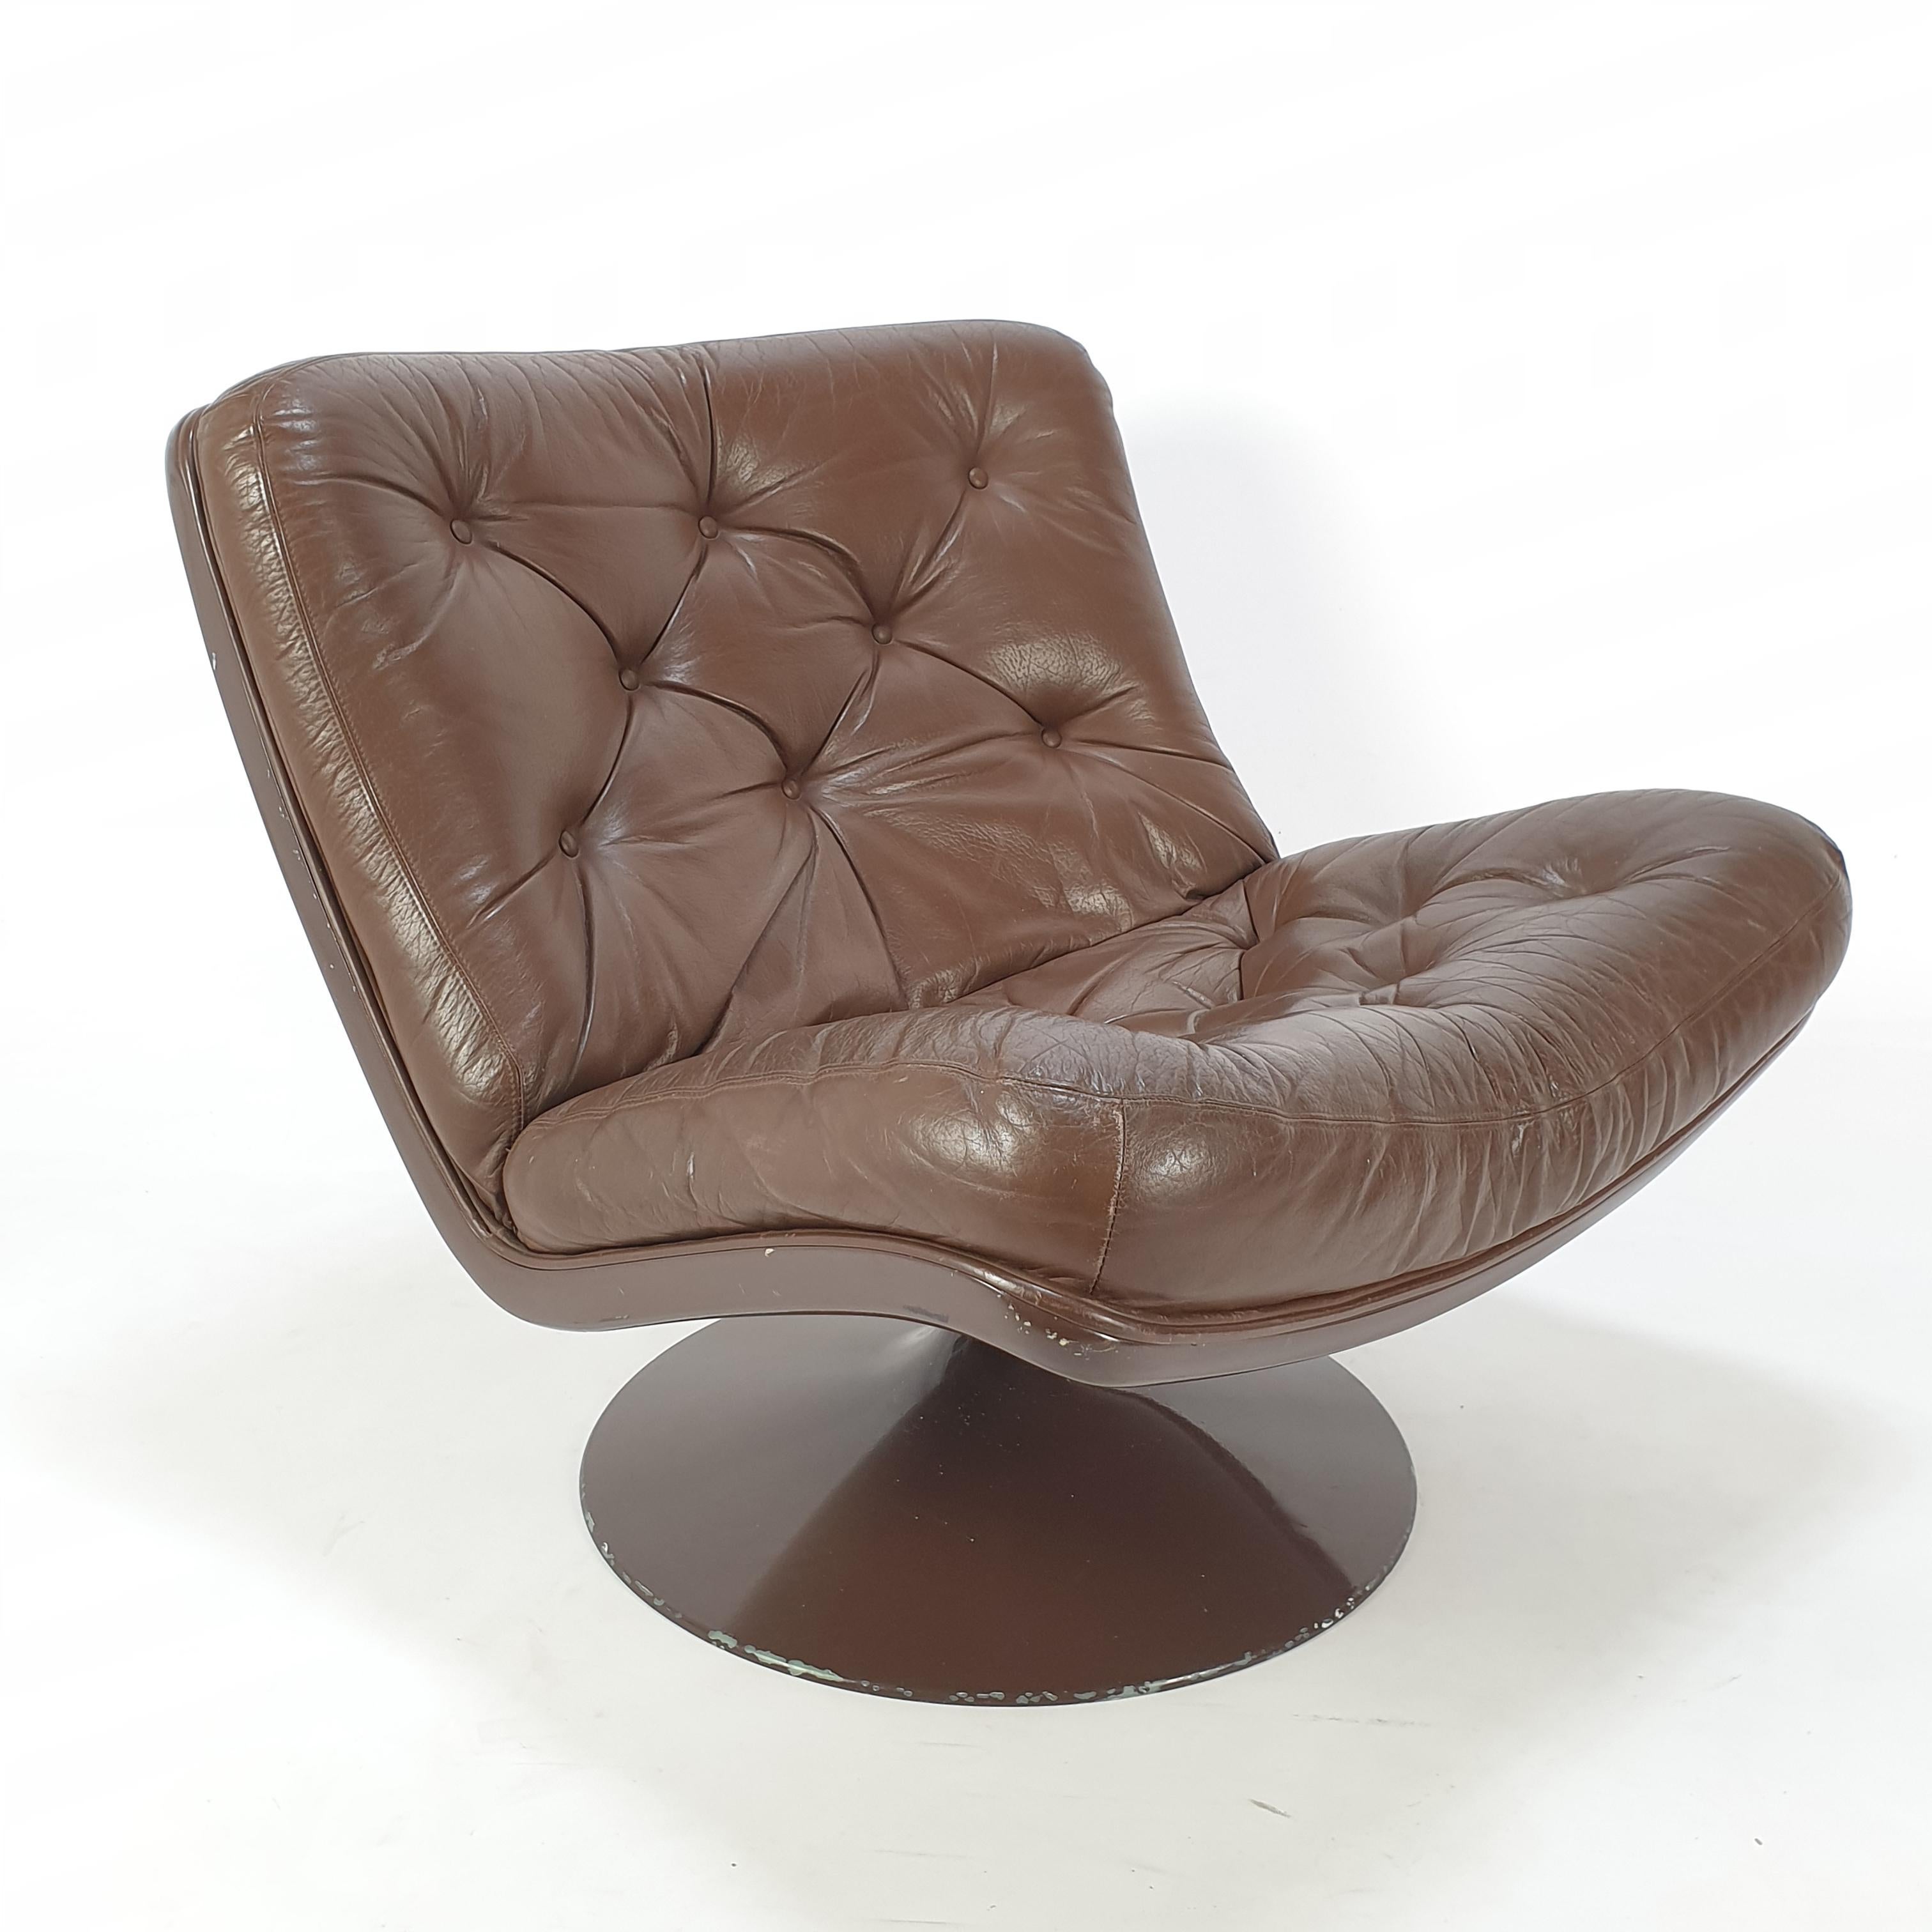 Chaise longue très confortable conçue par Geoffrey Harcourt pour Artifort dans les années 60. Il est doté d'un pied rotatif. Cuir brun d'origine avec une belle patine.